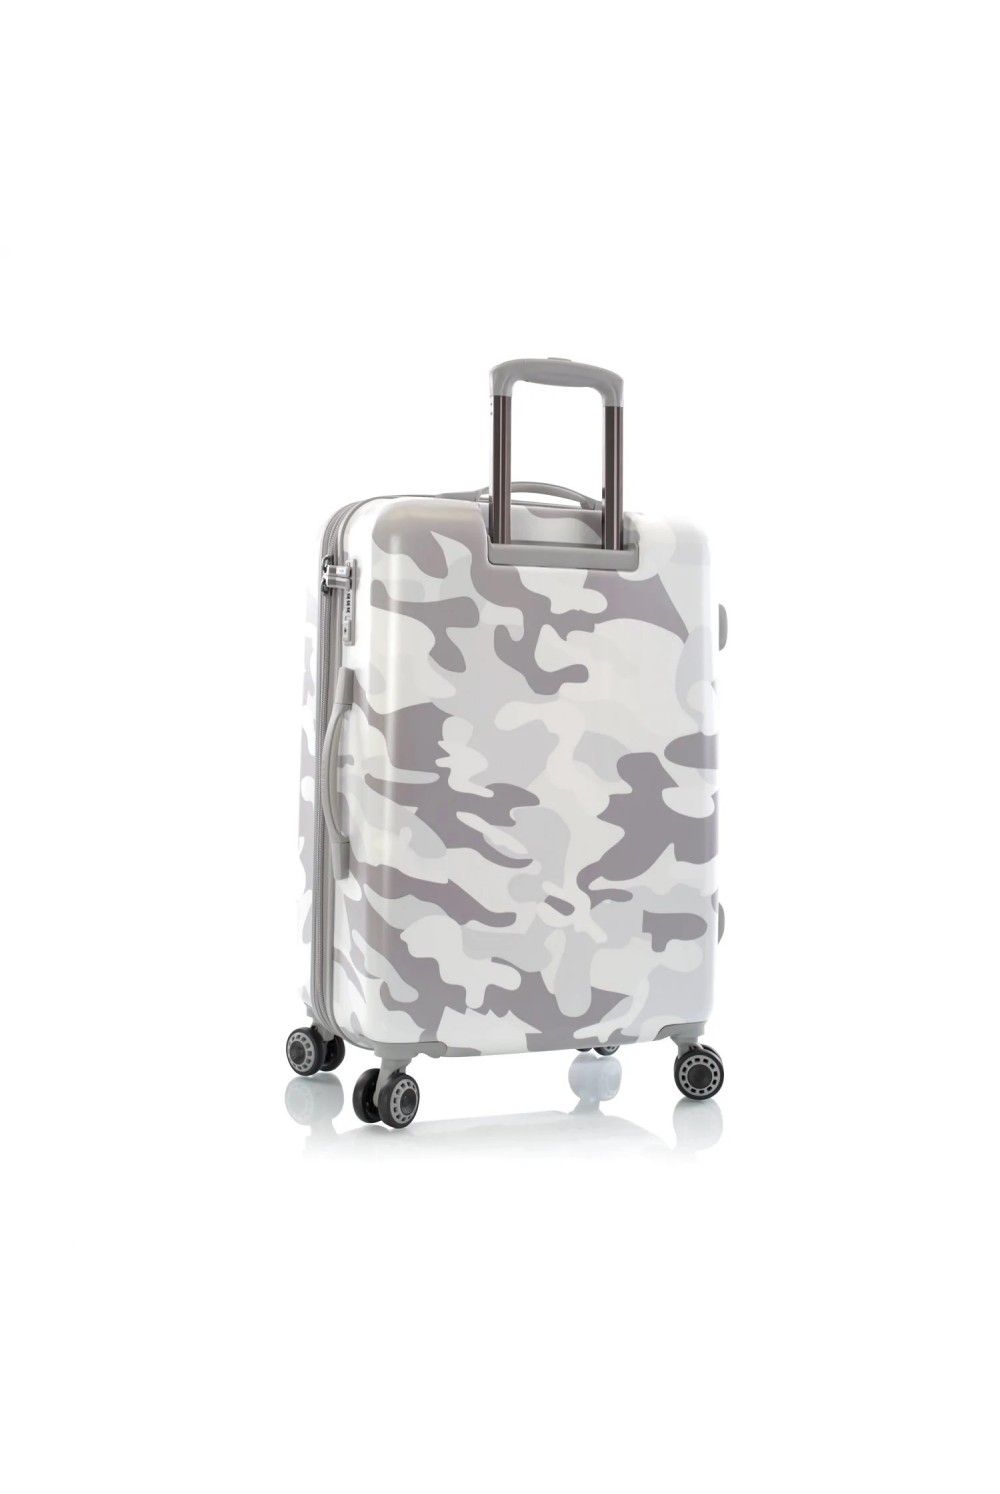 Suitcase Heys White Camo 4 Rad Medium 66cm expandable